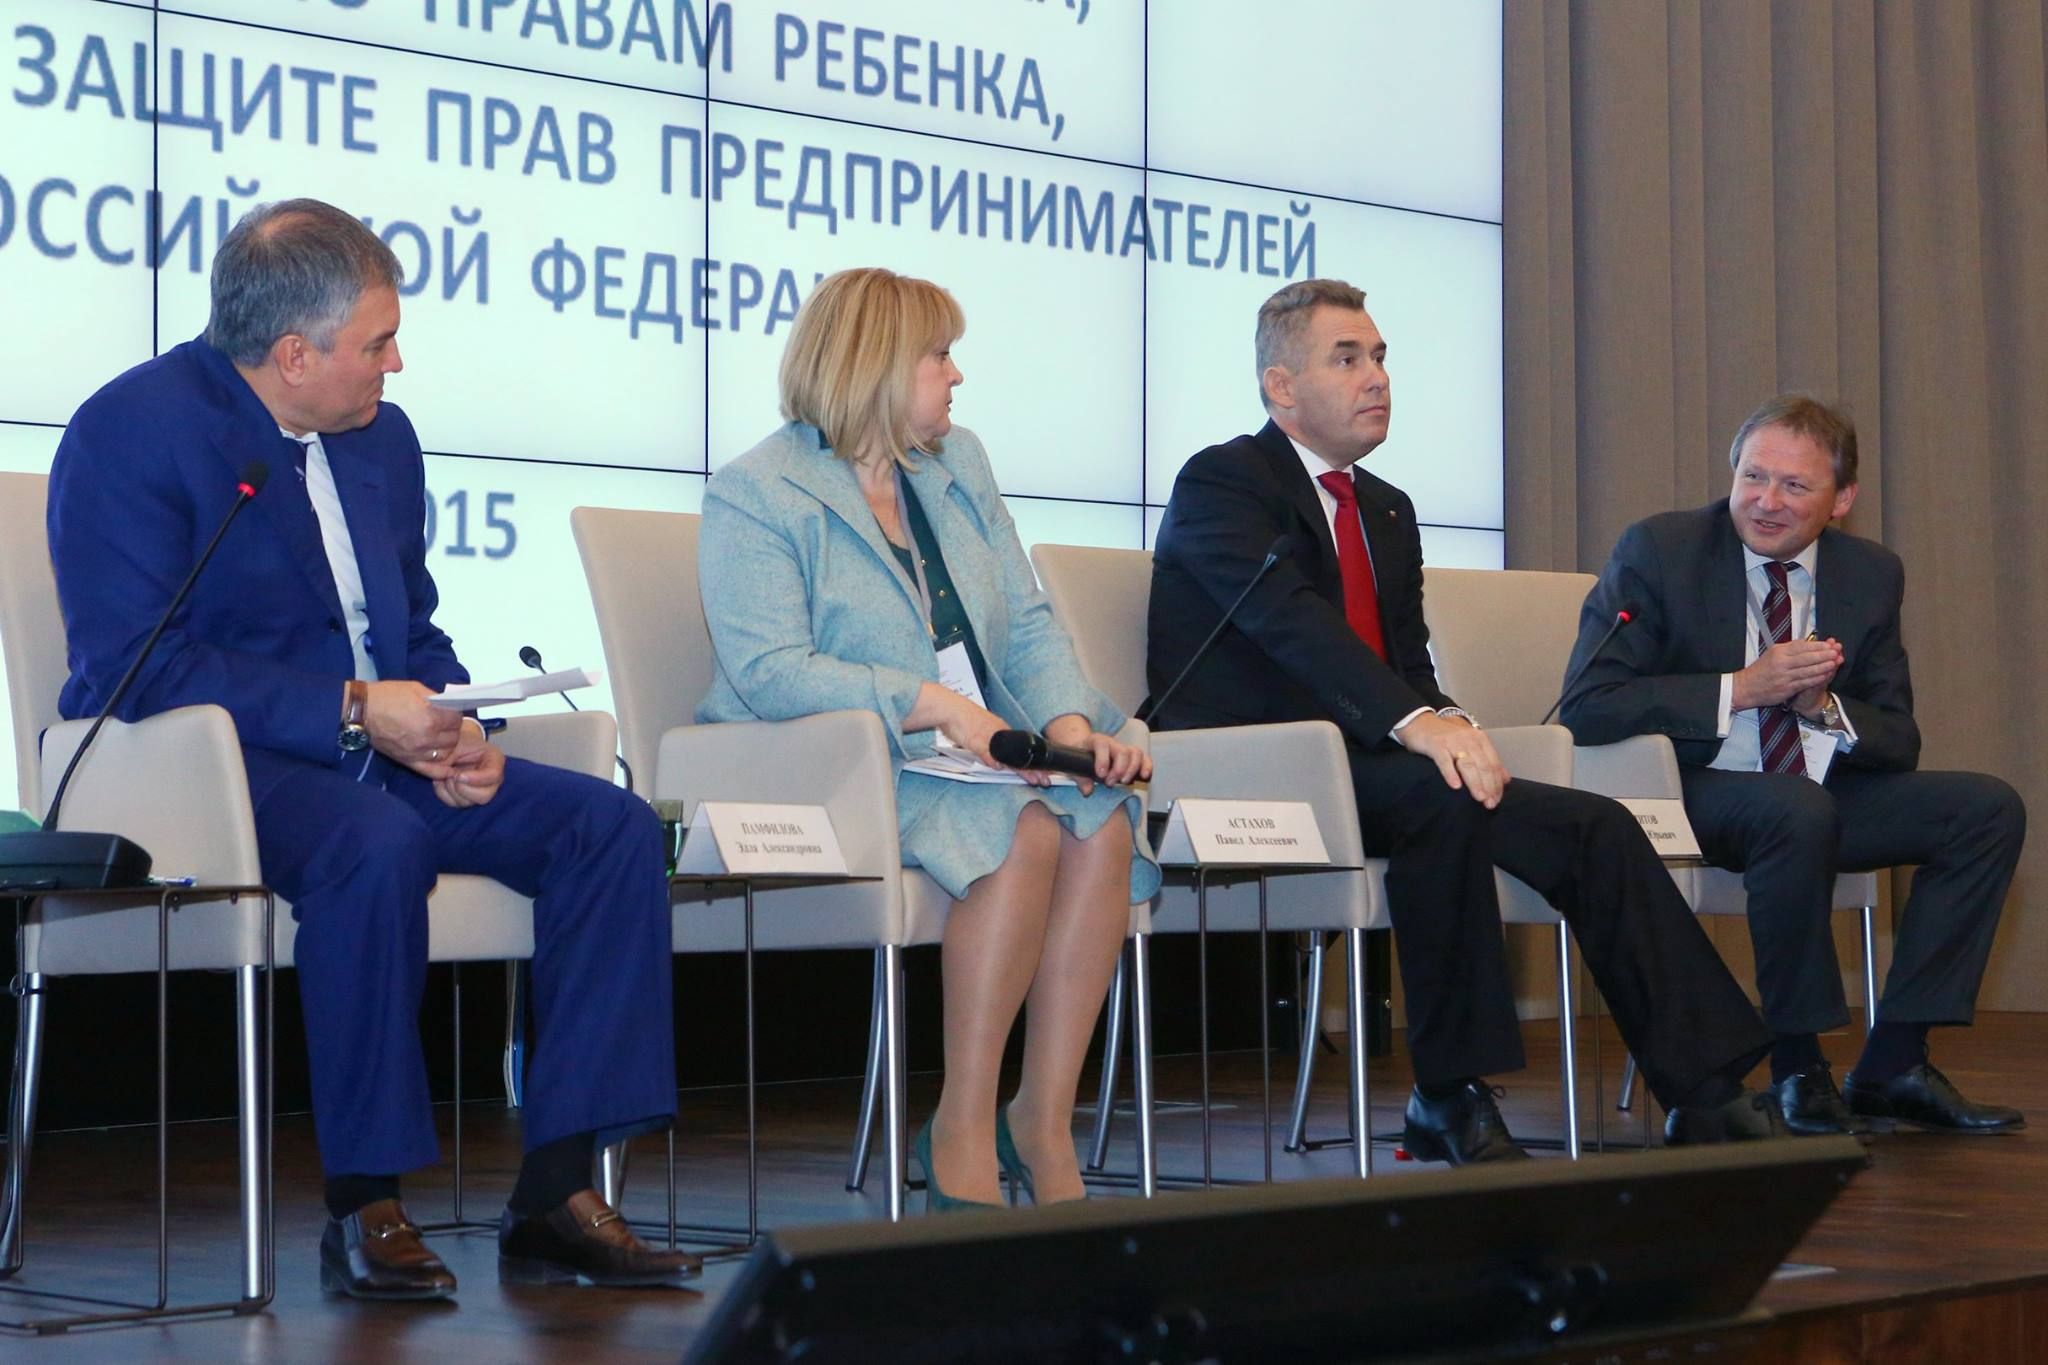 Совместный семинар-совещание по вопросам внутренней политики российских уполномоченных по правам человека